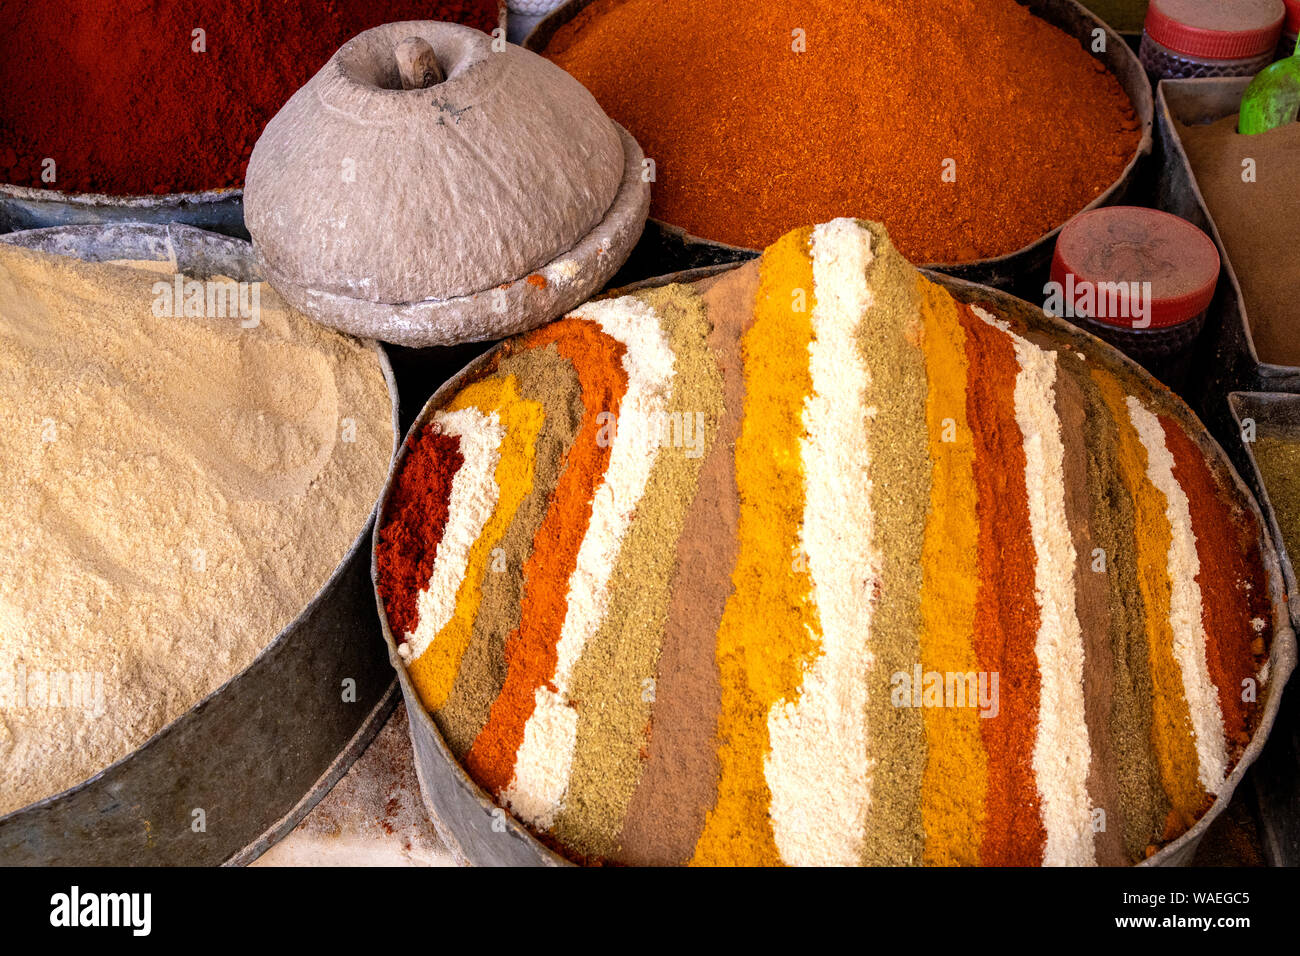 La bellissima spezie del Marocco visto nella strada dei mercati di tutto il mondo. Foto Stock